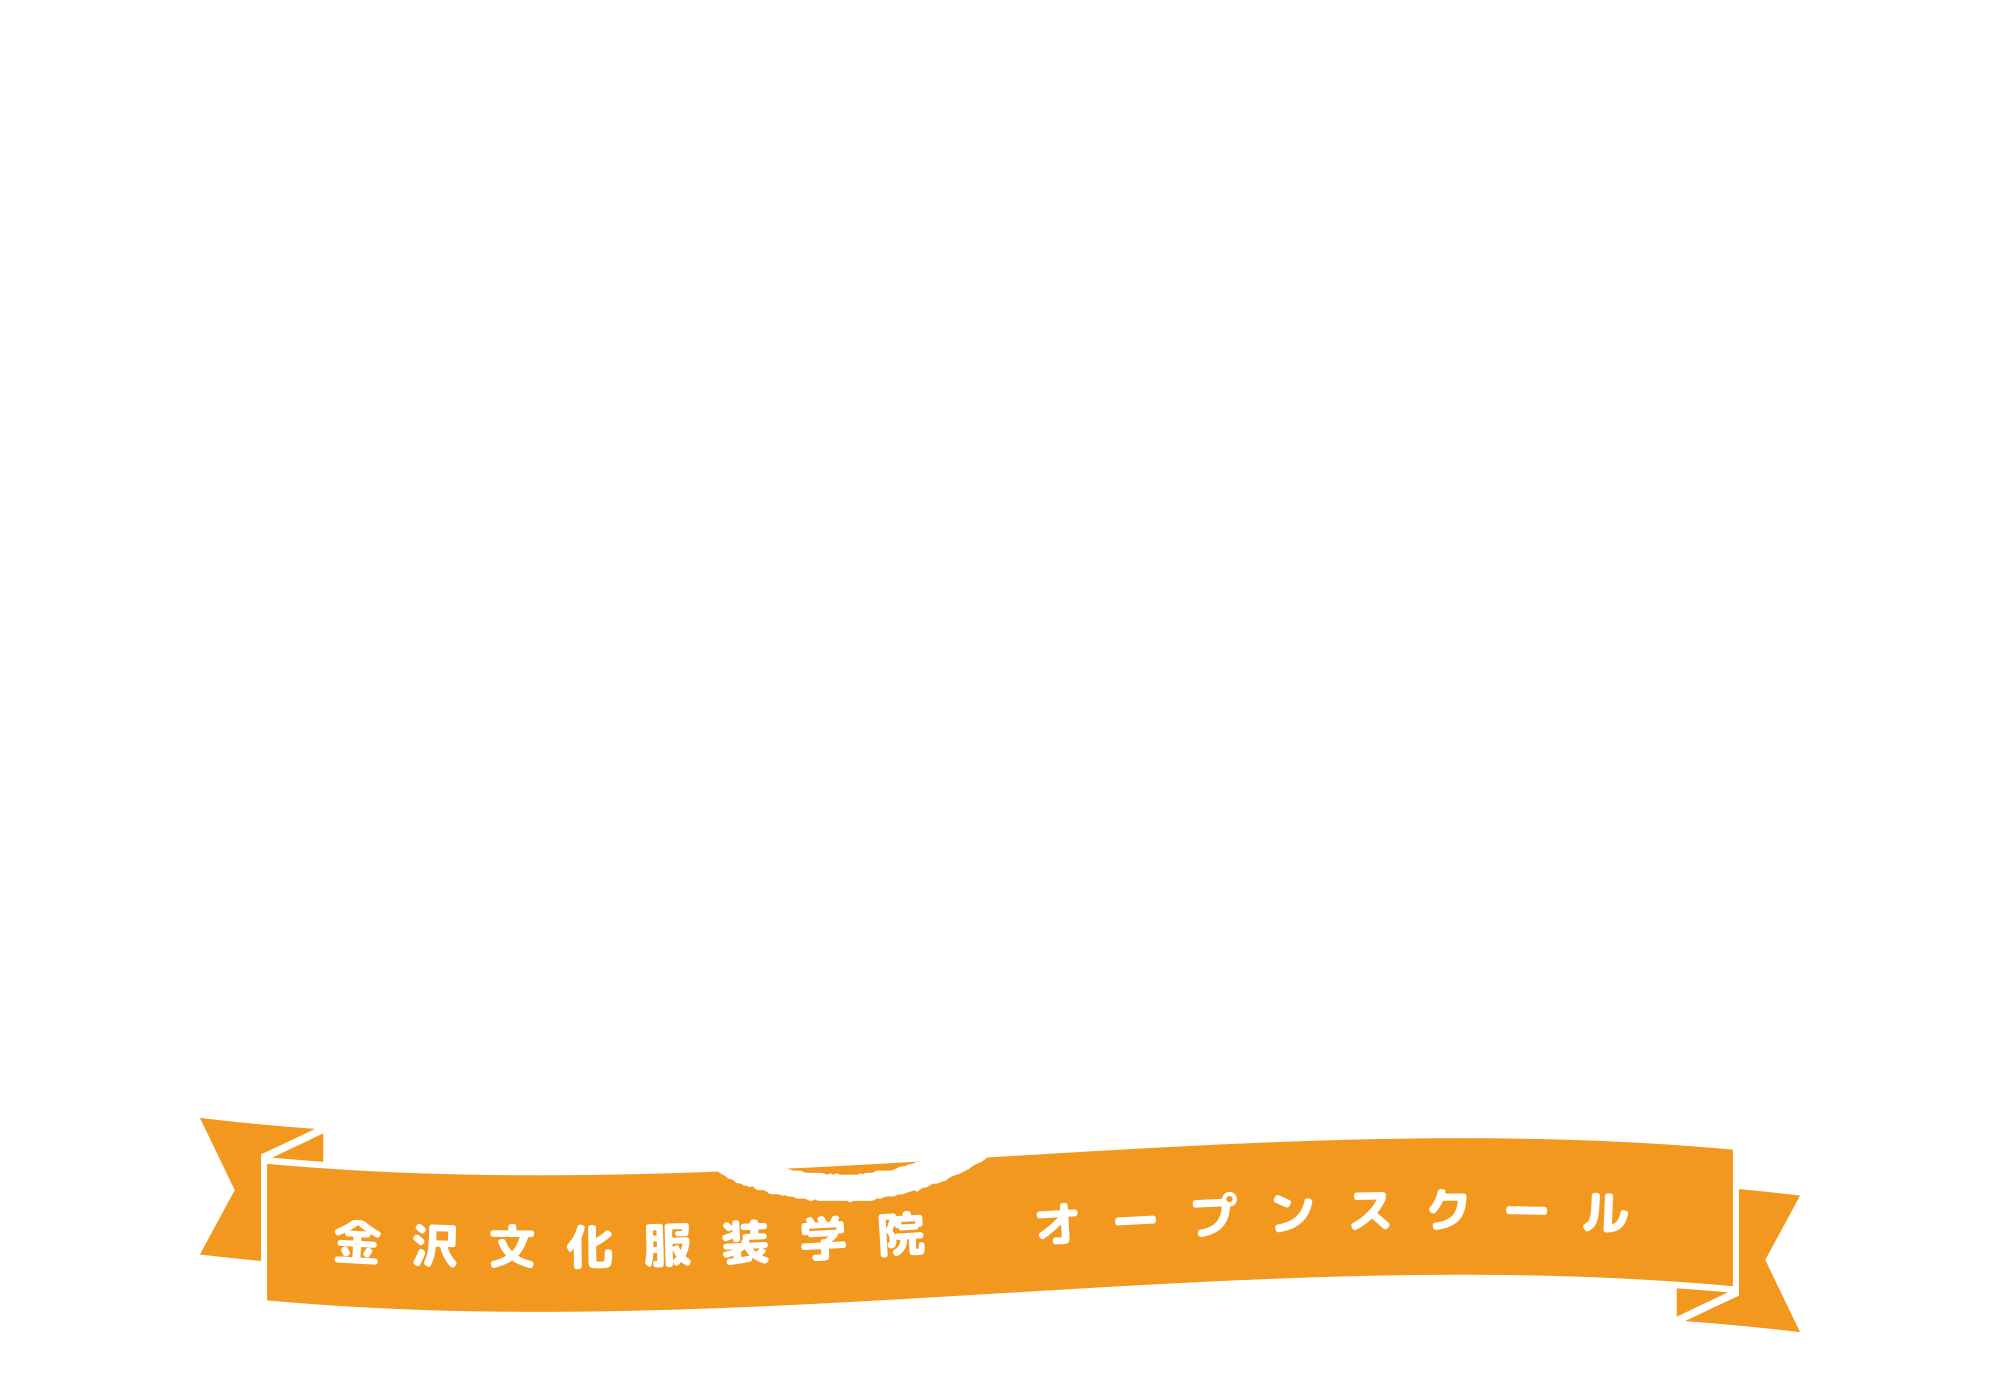 OpenSchool